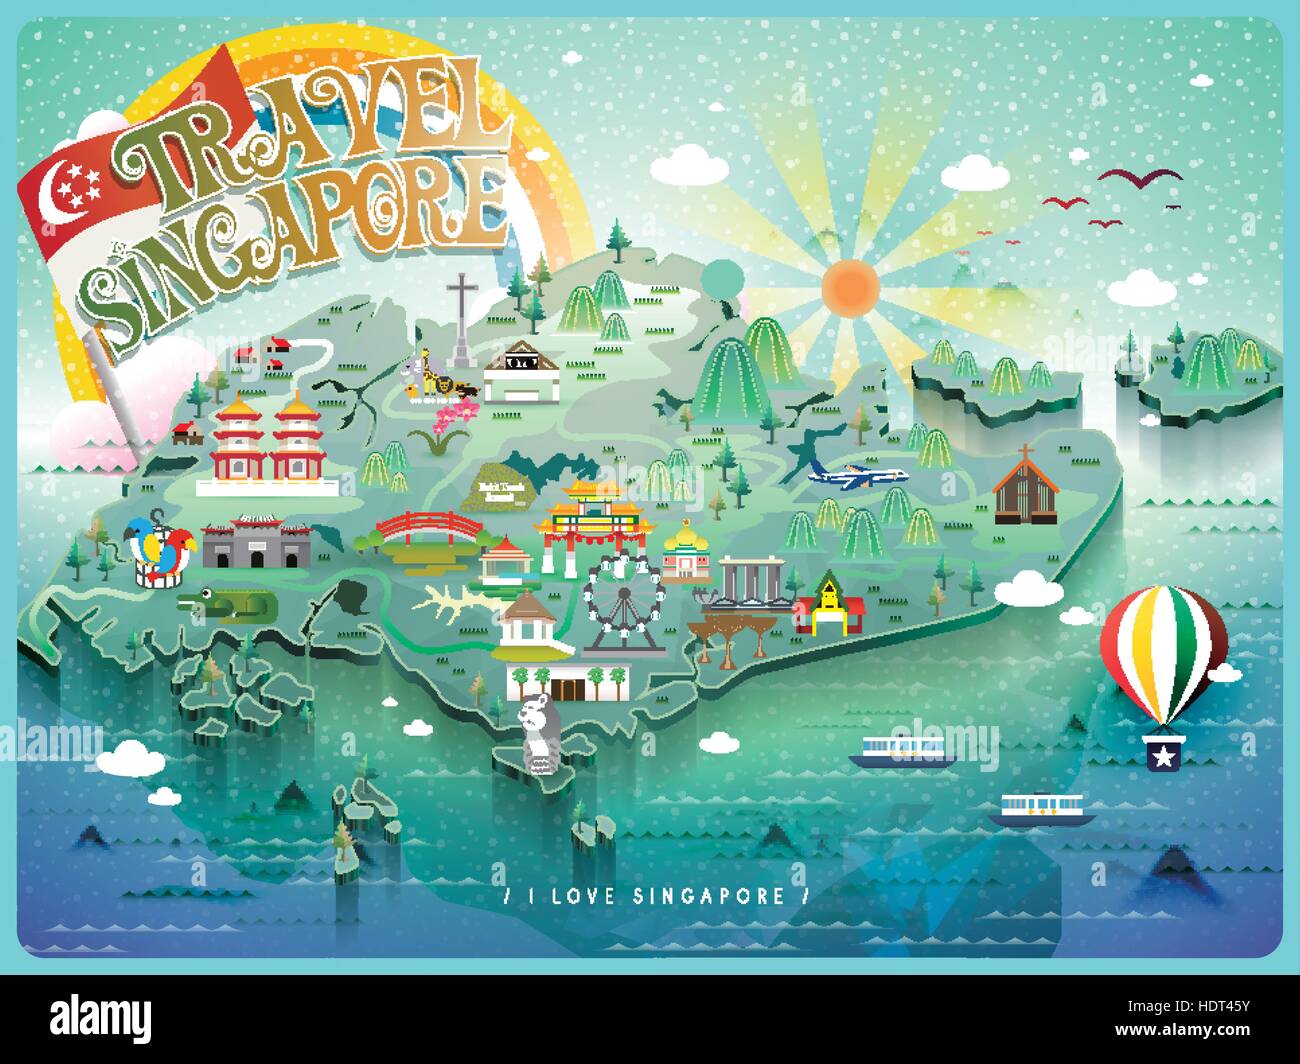 Belle carte de voyage Singapour avec l'icône colorée attractions touristiques Illustration de Vecteur